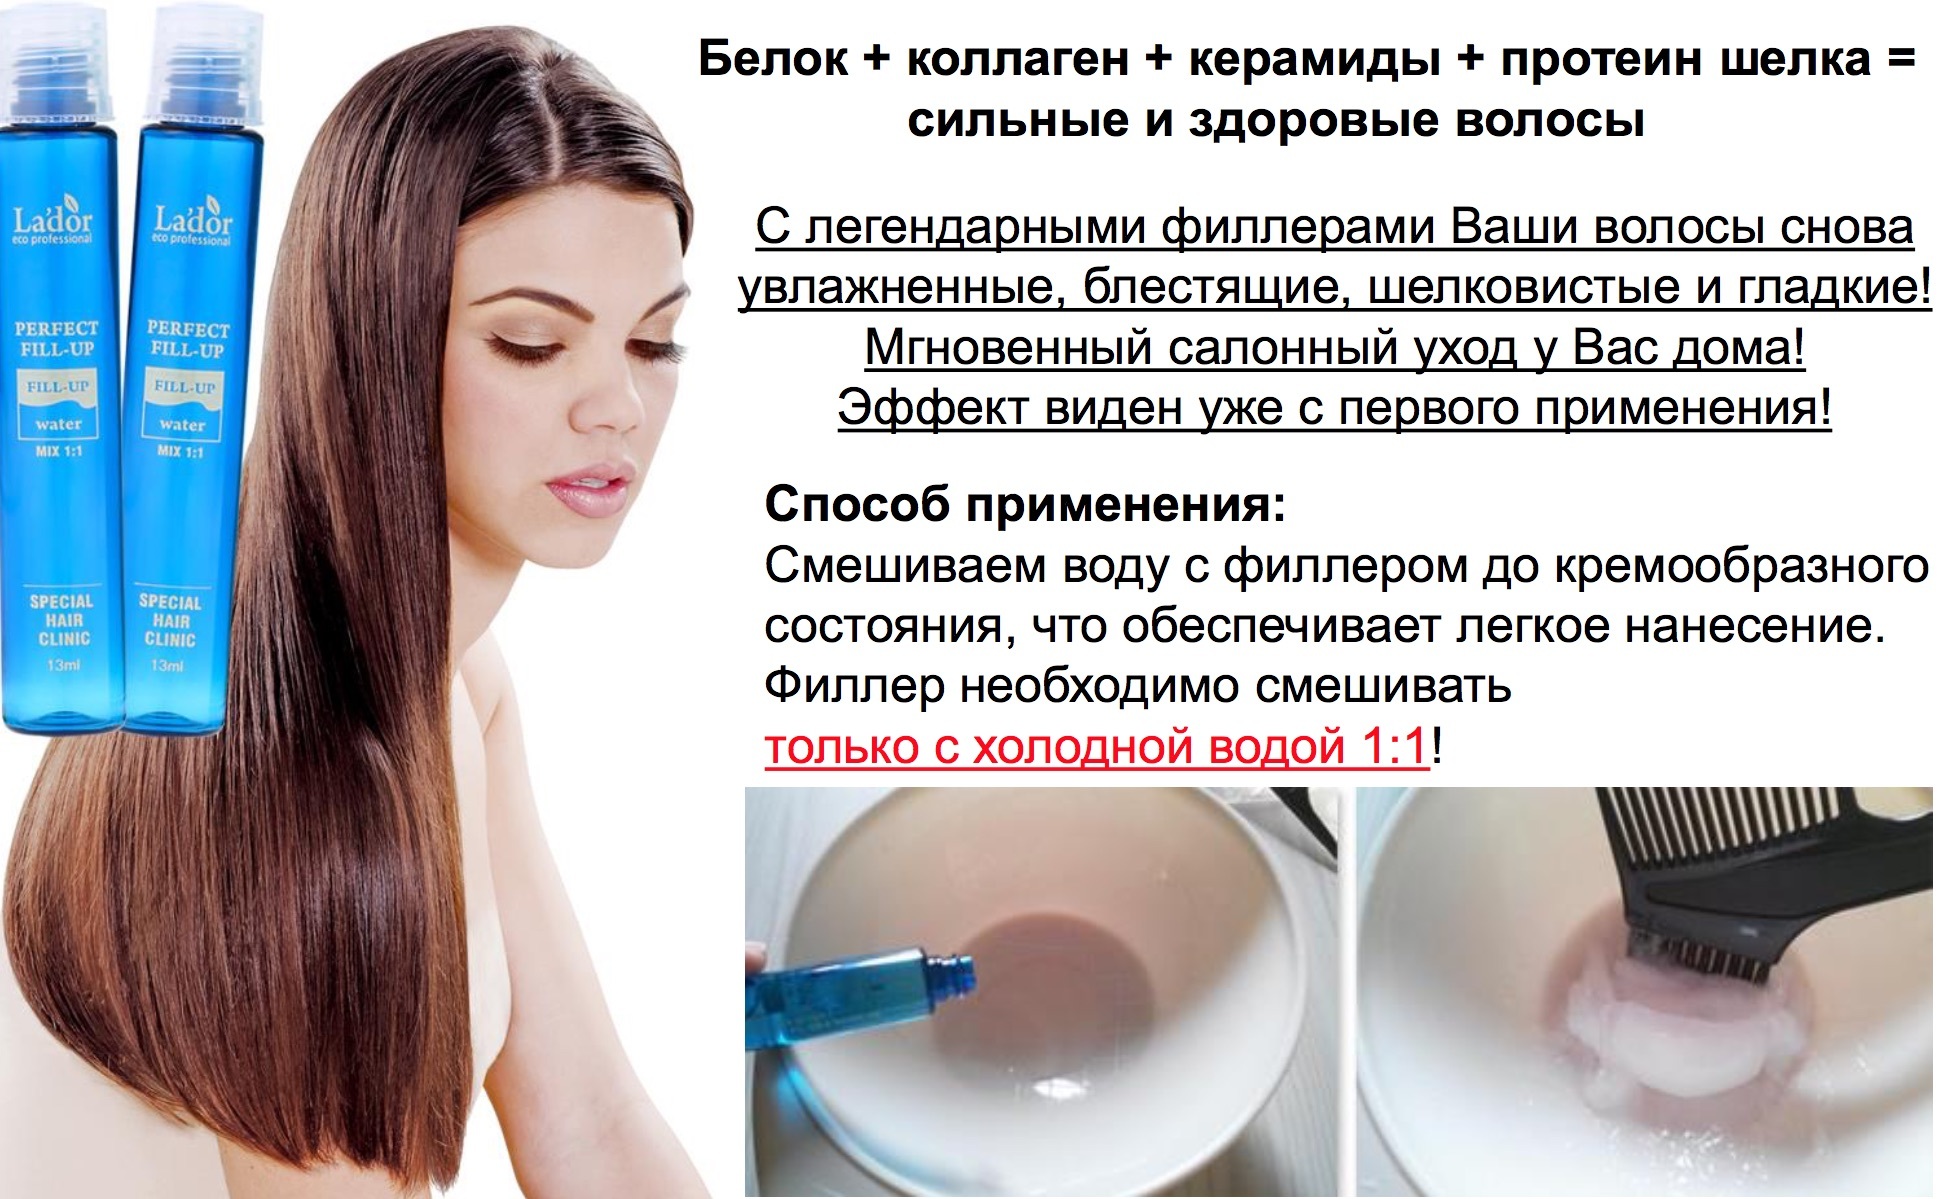 Восстанавливающая сыворотка для волос: применение и отзывы :: syl.ru